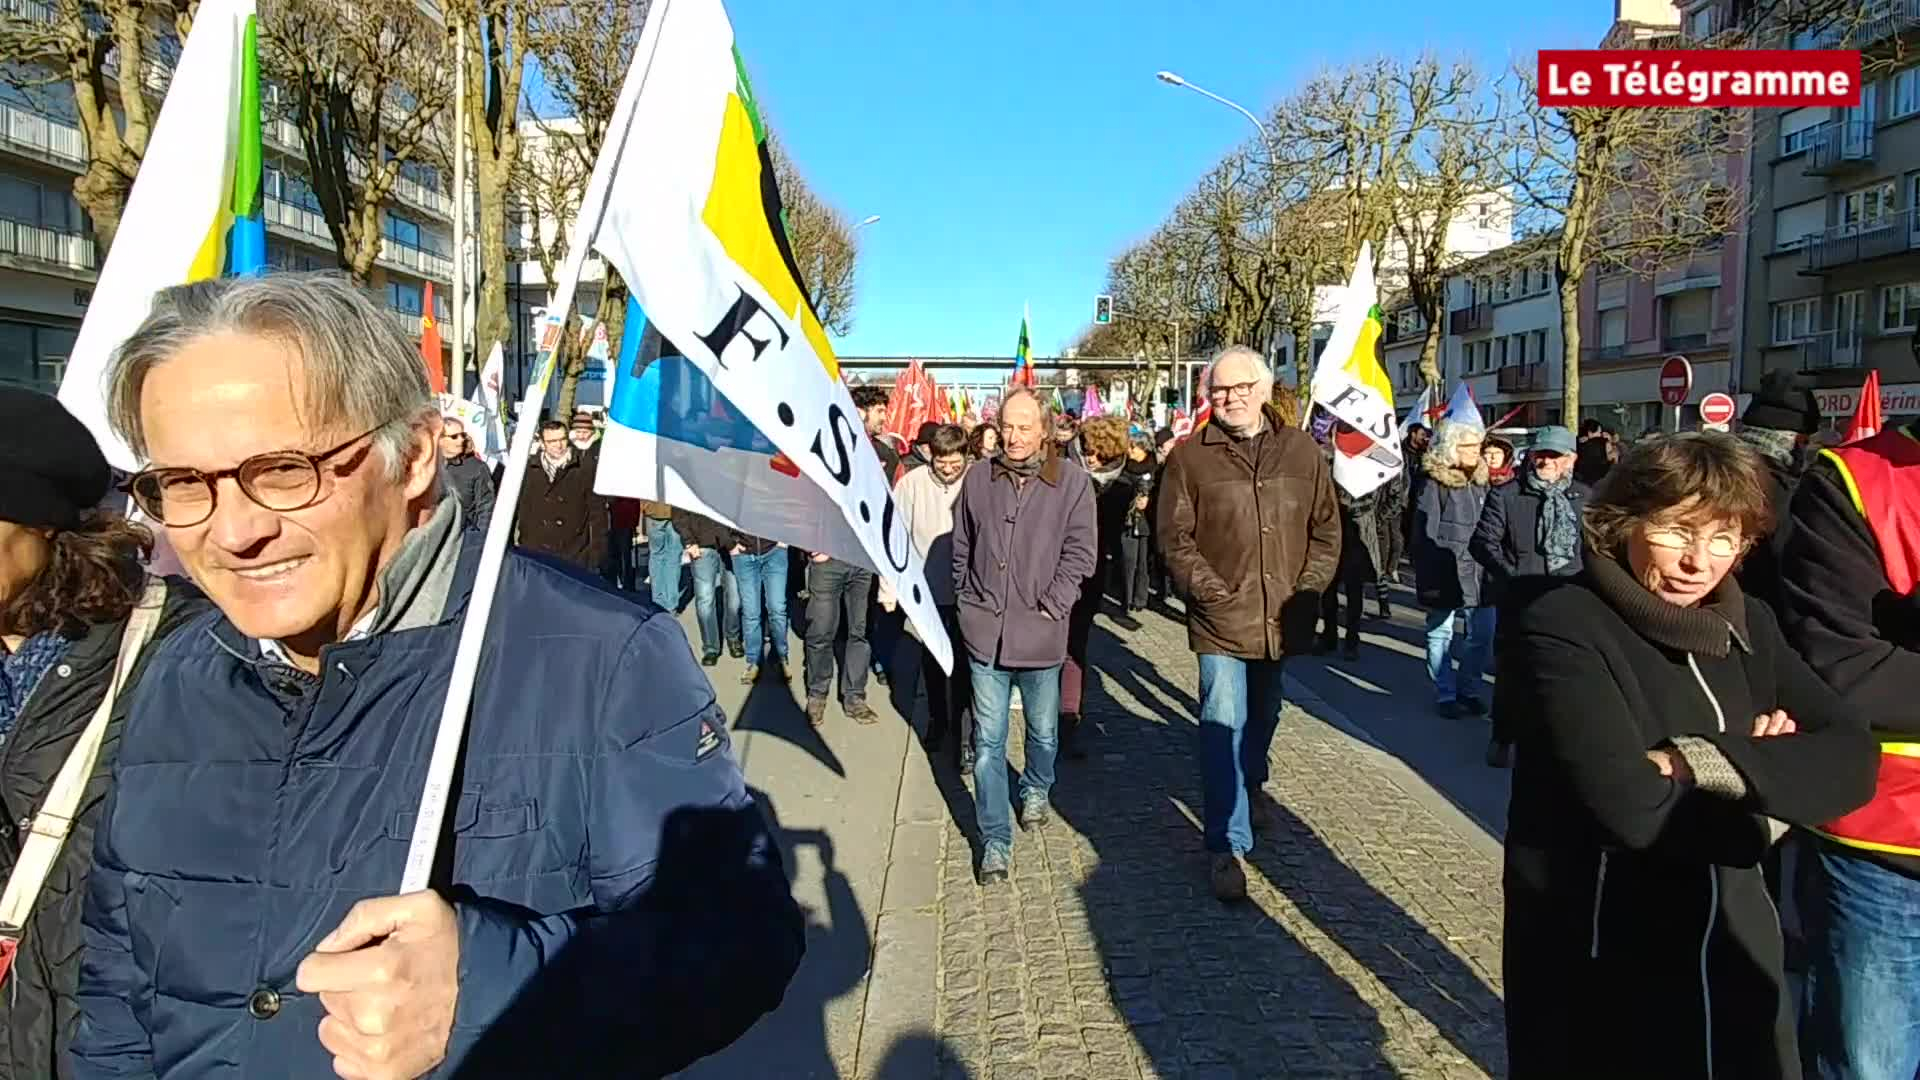 Réforme des retraites. Les manifestations du 6 février en Bretagne (Le Télégramme)